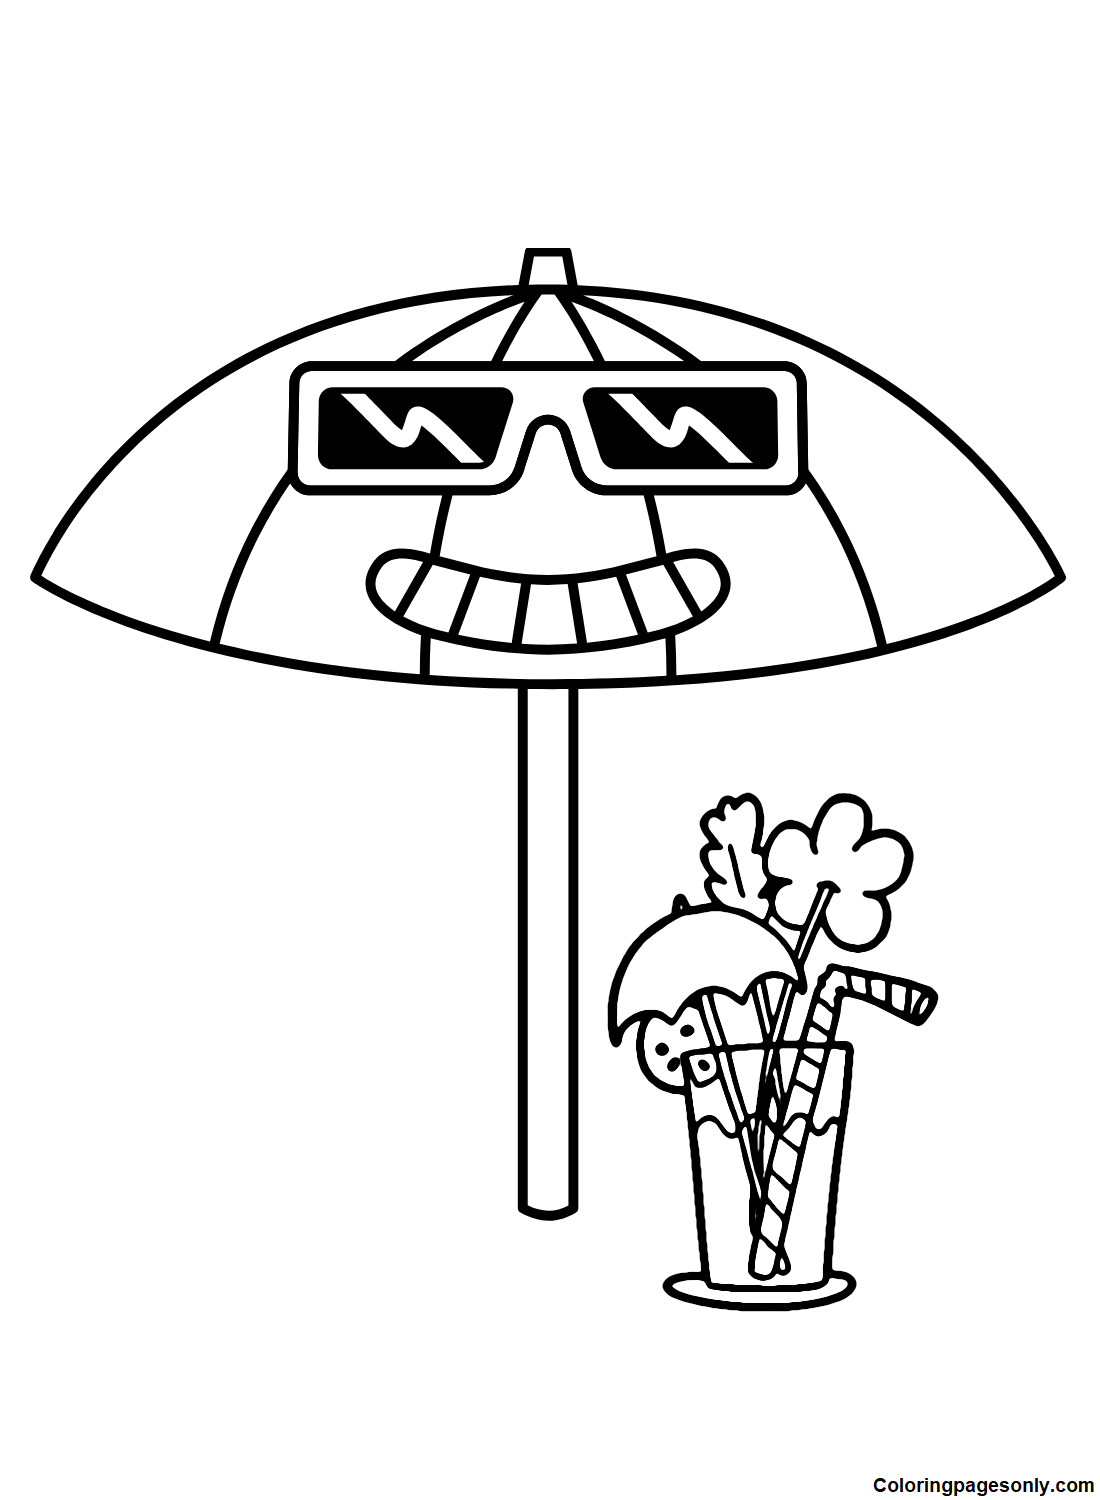 Guarda-chuva engraçado da Umbrella